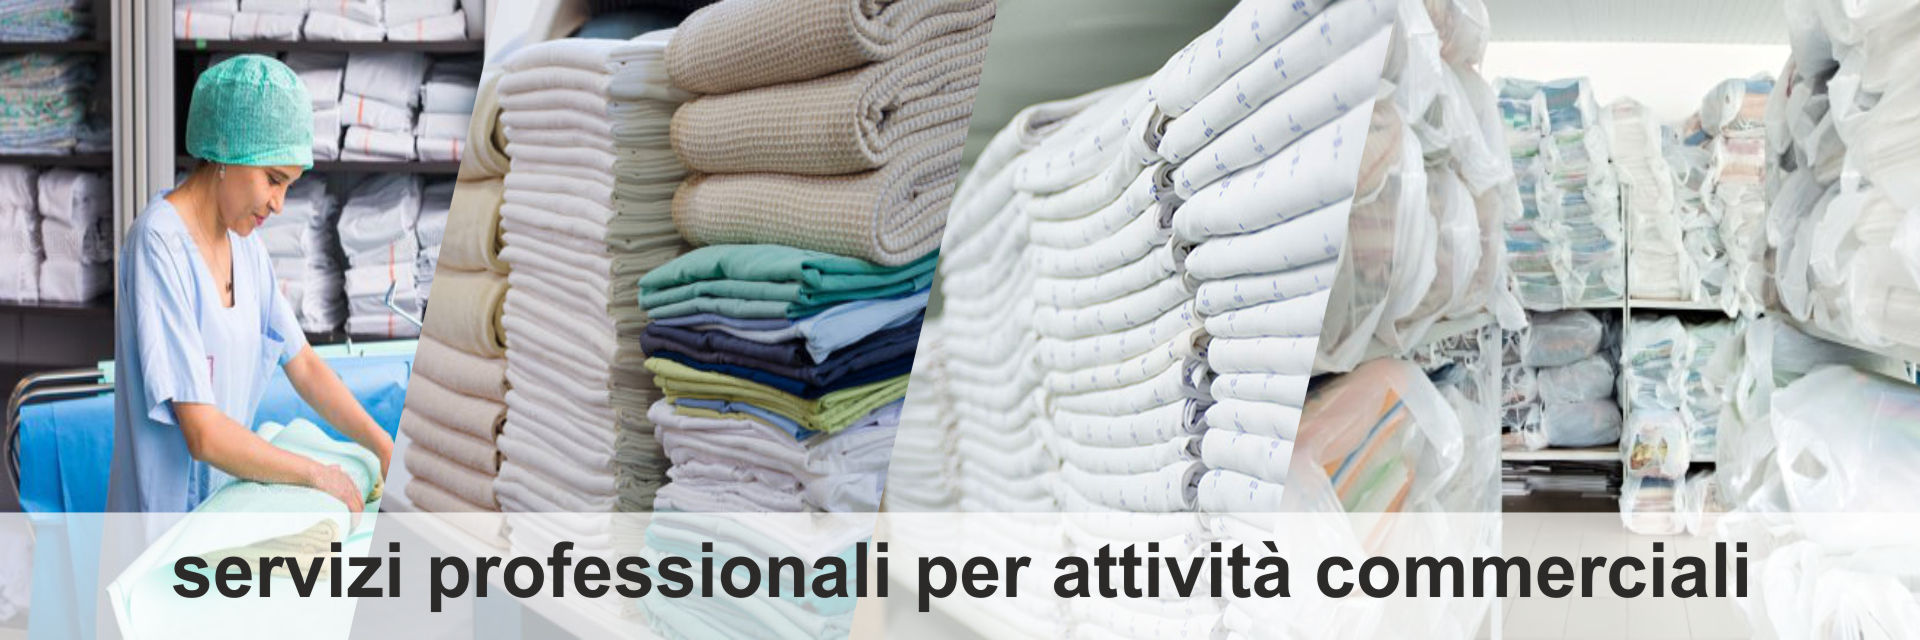 professional-washing_miatintoria_roma